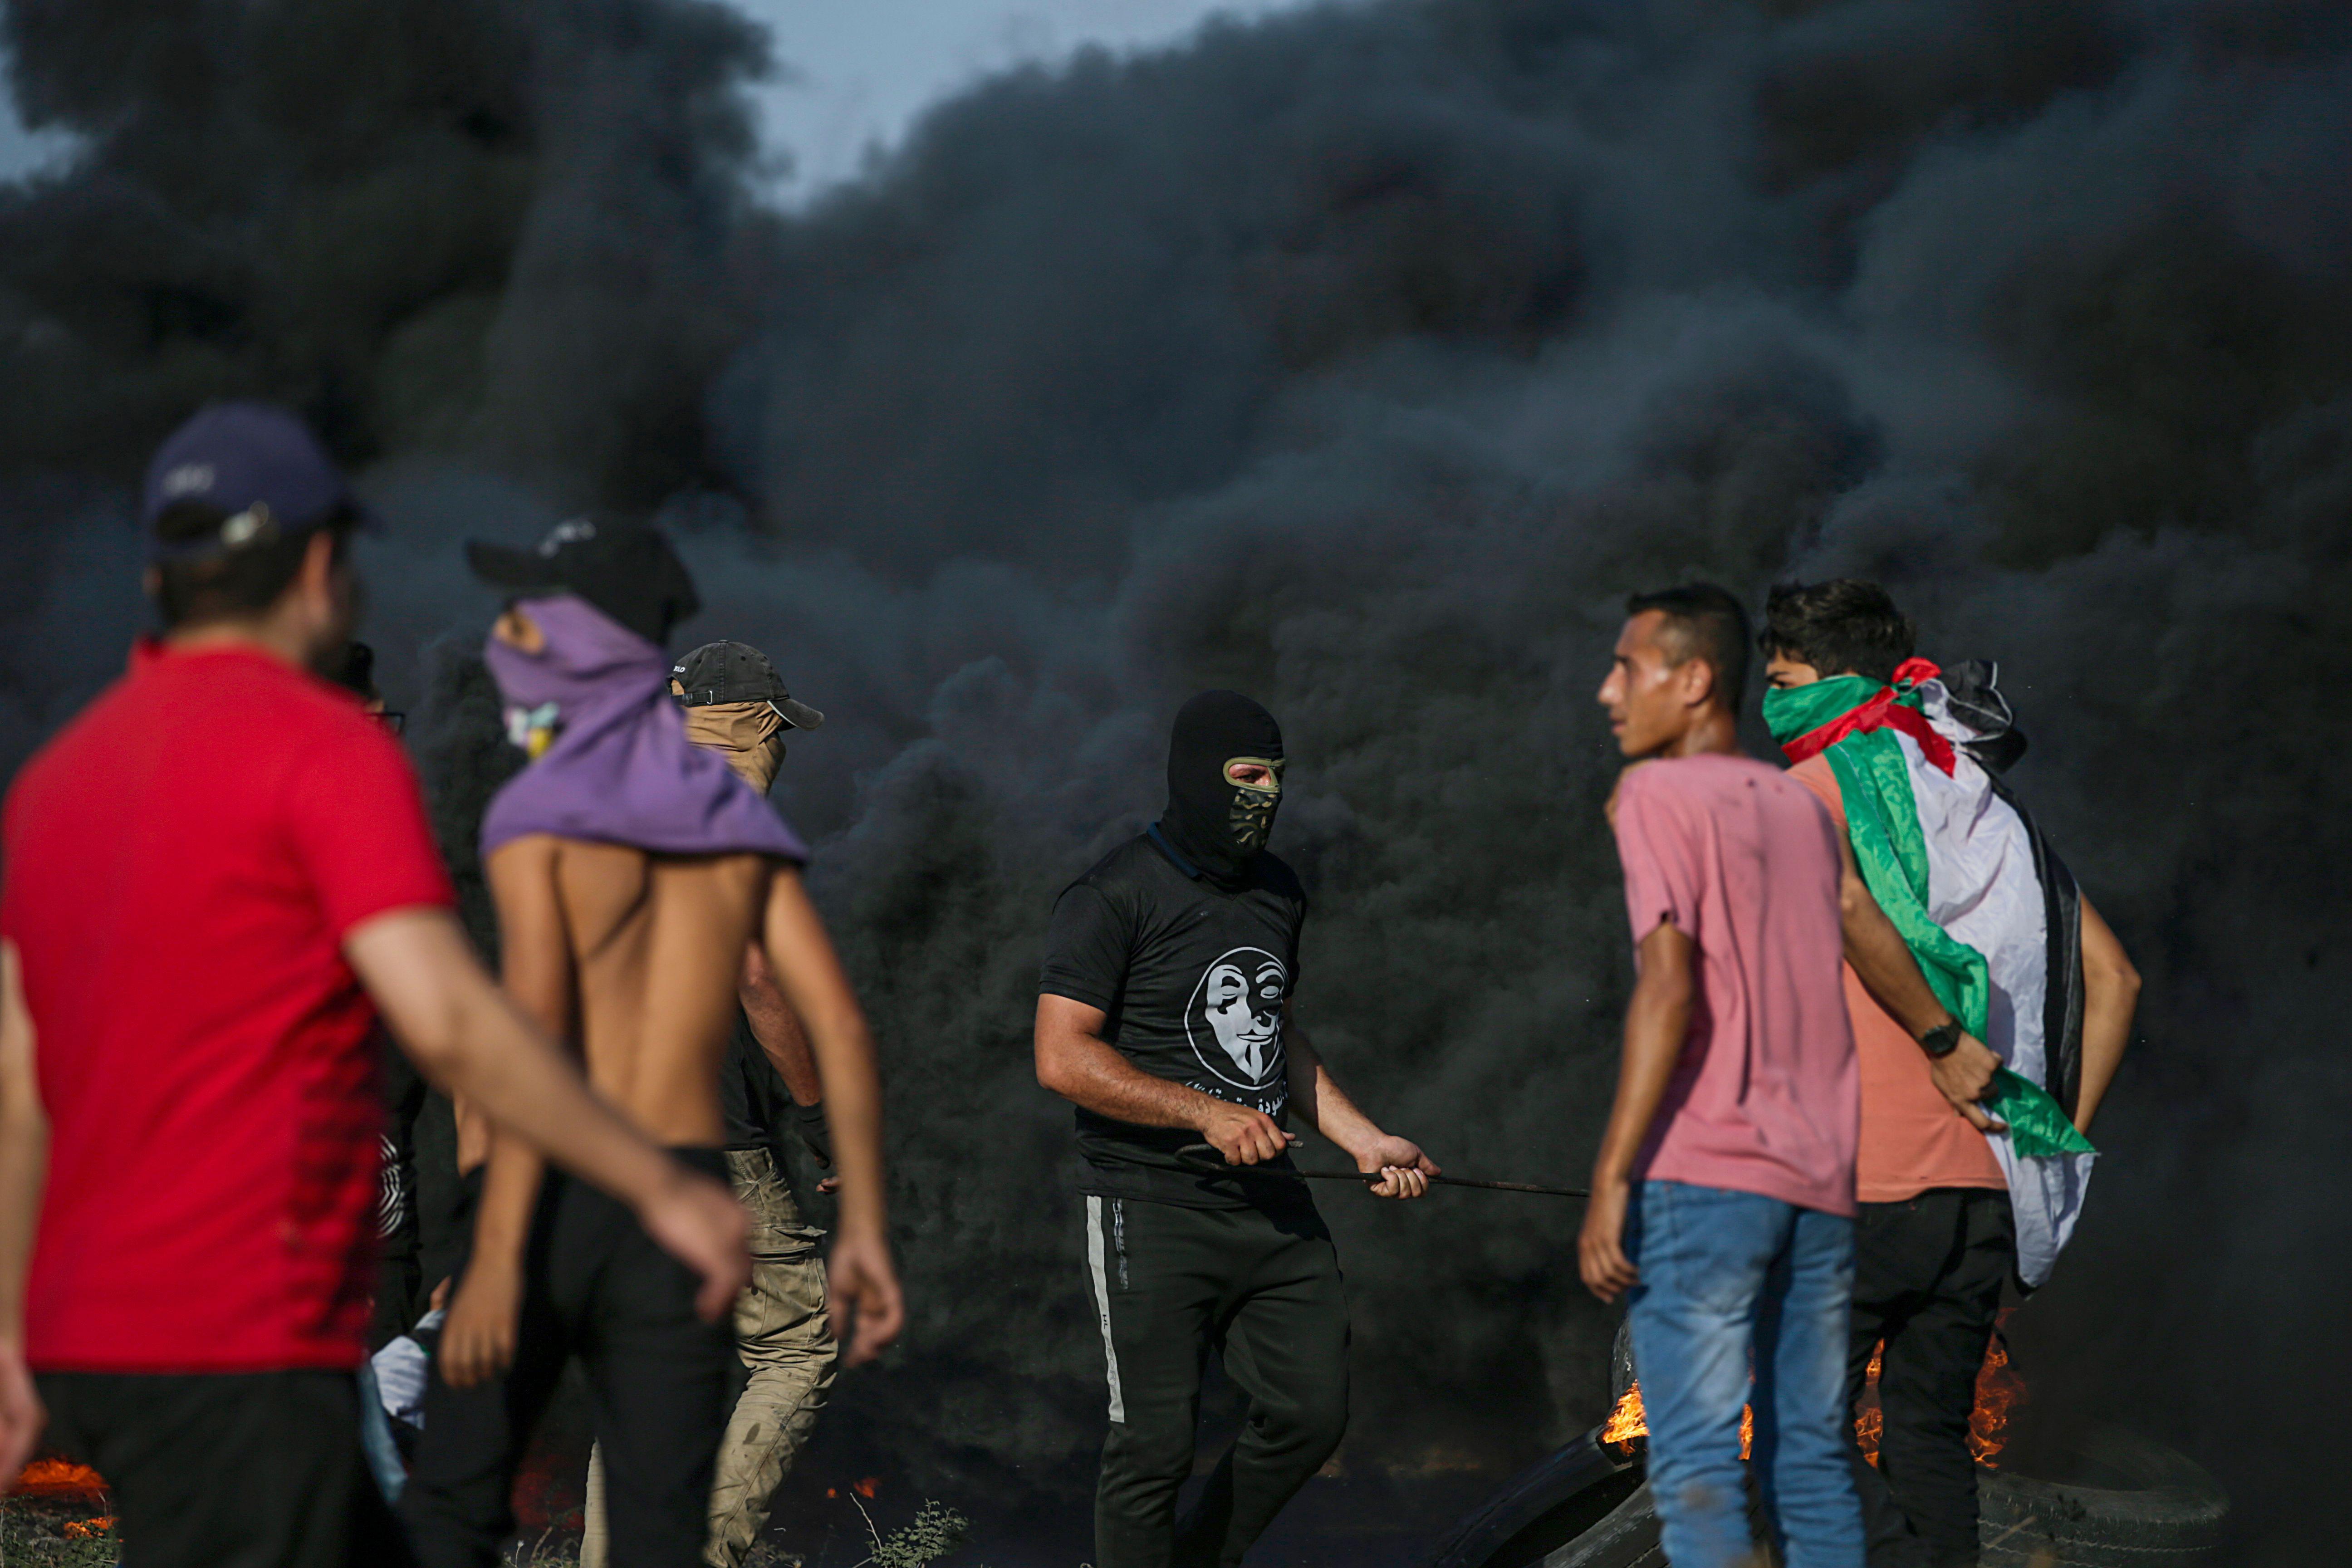 متظاهرون فلسطينيون يقفون بالقرب من الدخان الأسود المتصاعد من الإطارات المحترقة خلال الاشتباكات على الحدود الشرقية لقطاع غزة.